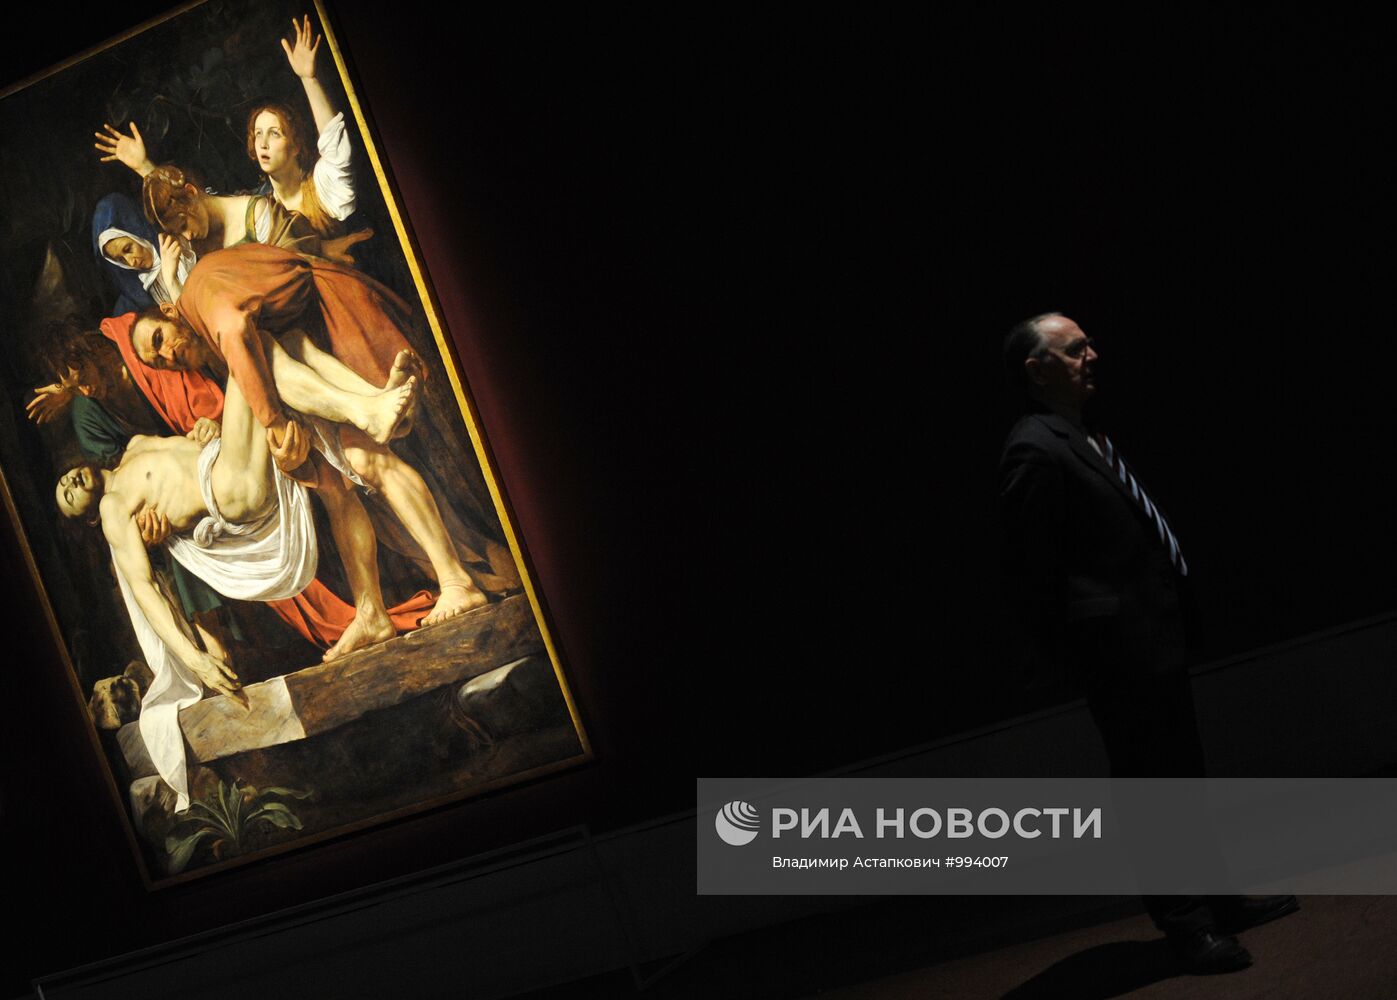 Открытие выставки работ Караваджо в ГМИИ имени А.С. Пушкина